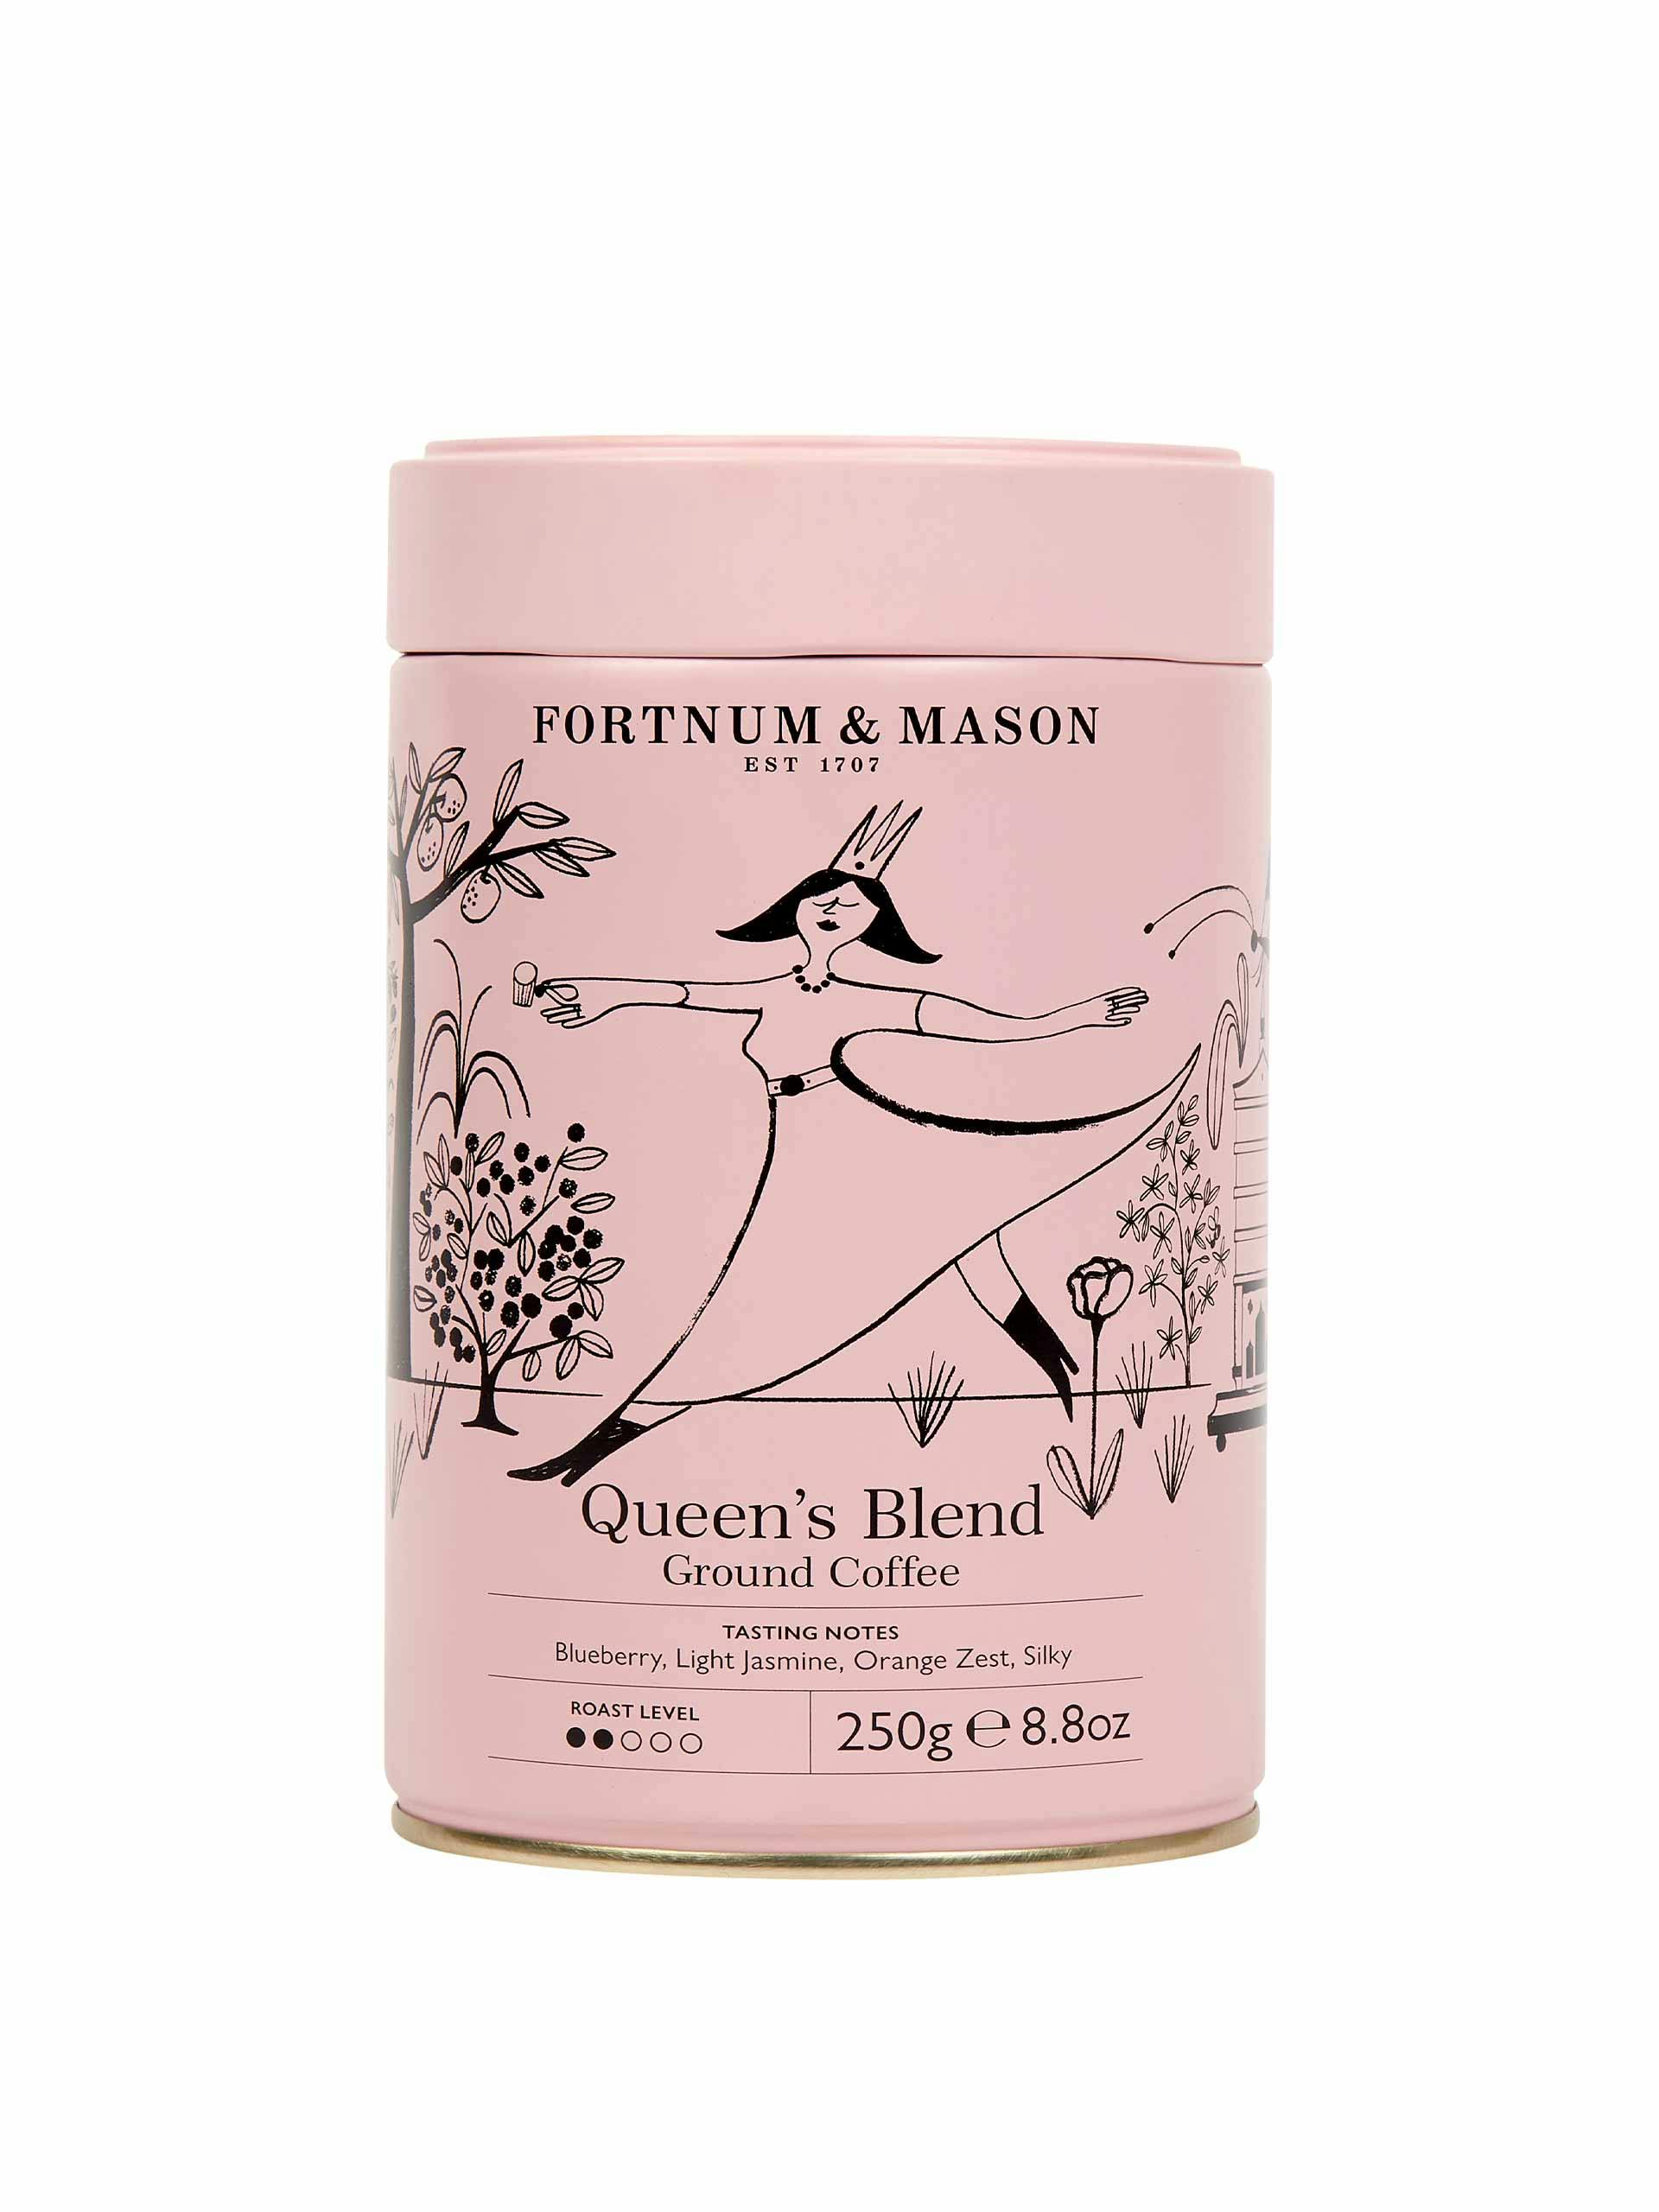 Queen’s Blend ground coffee